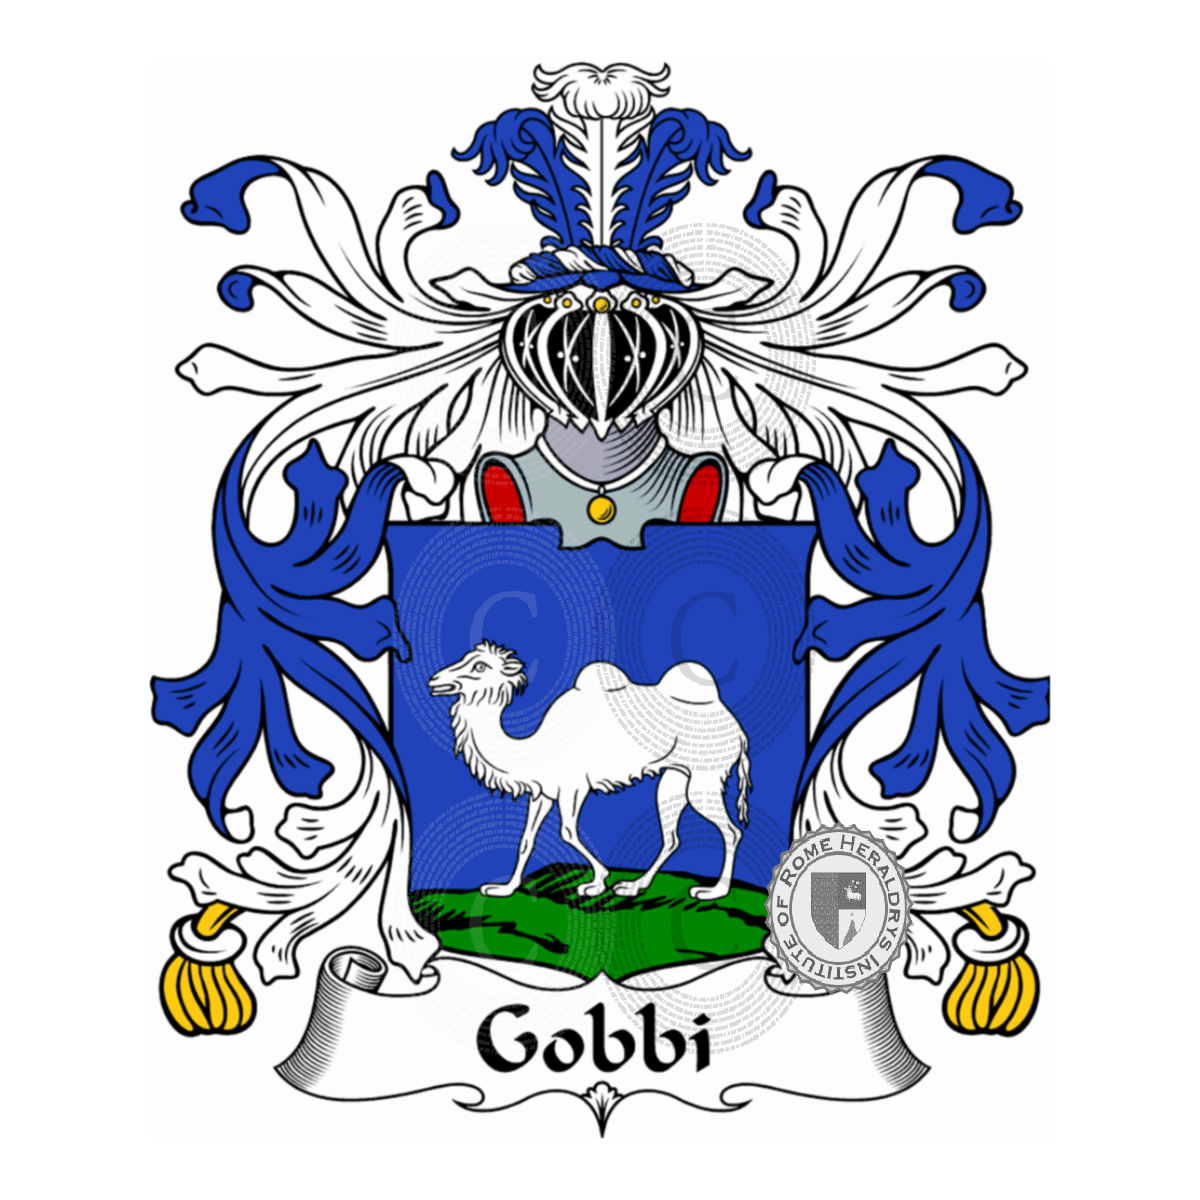 Brasão da famíliaGobbi, Gobio